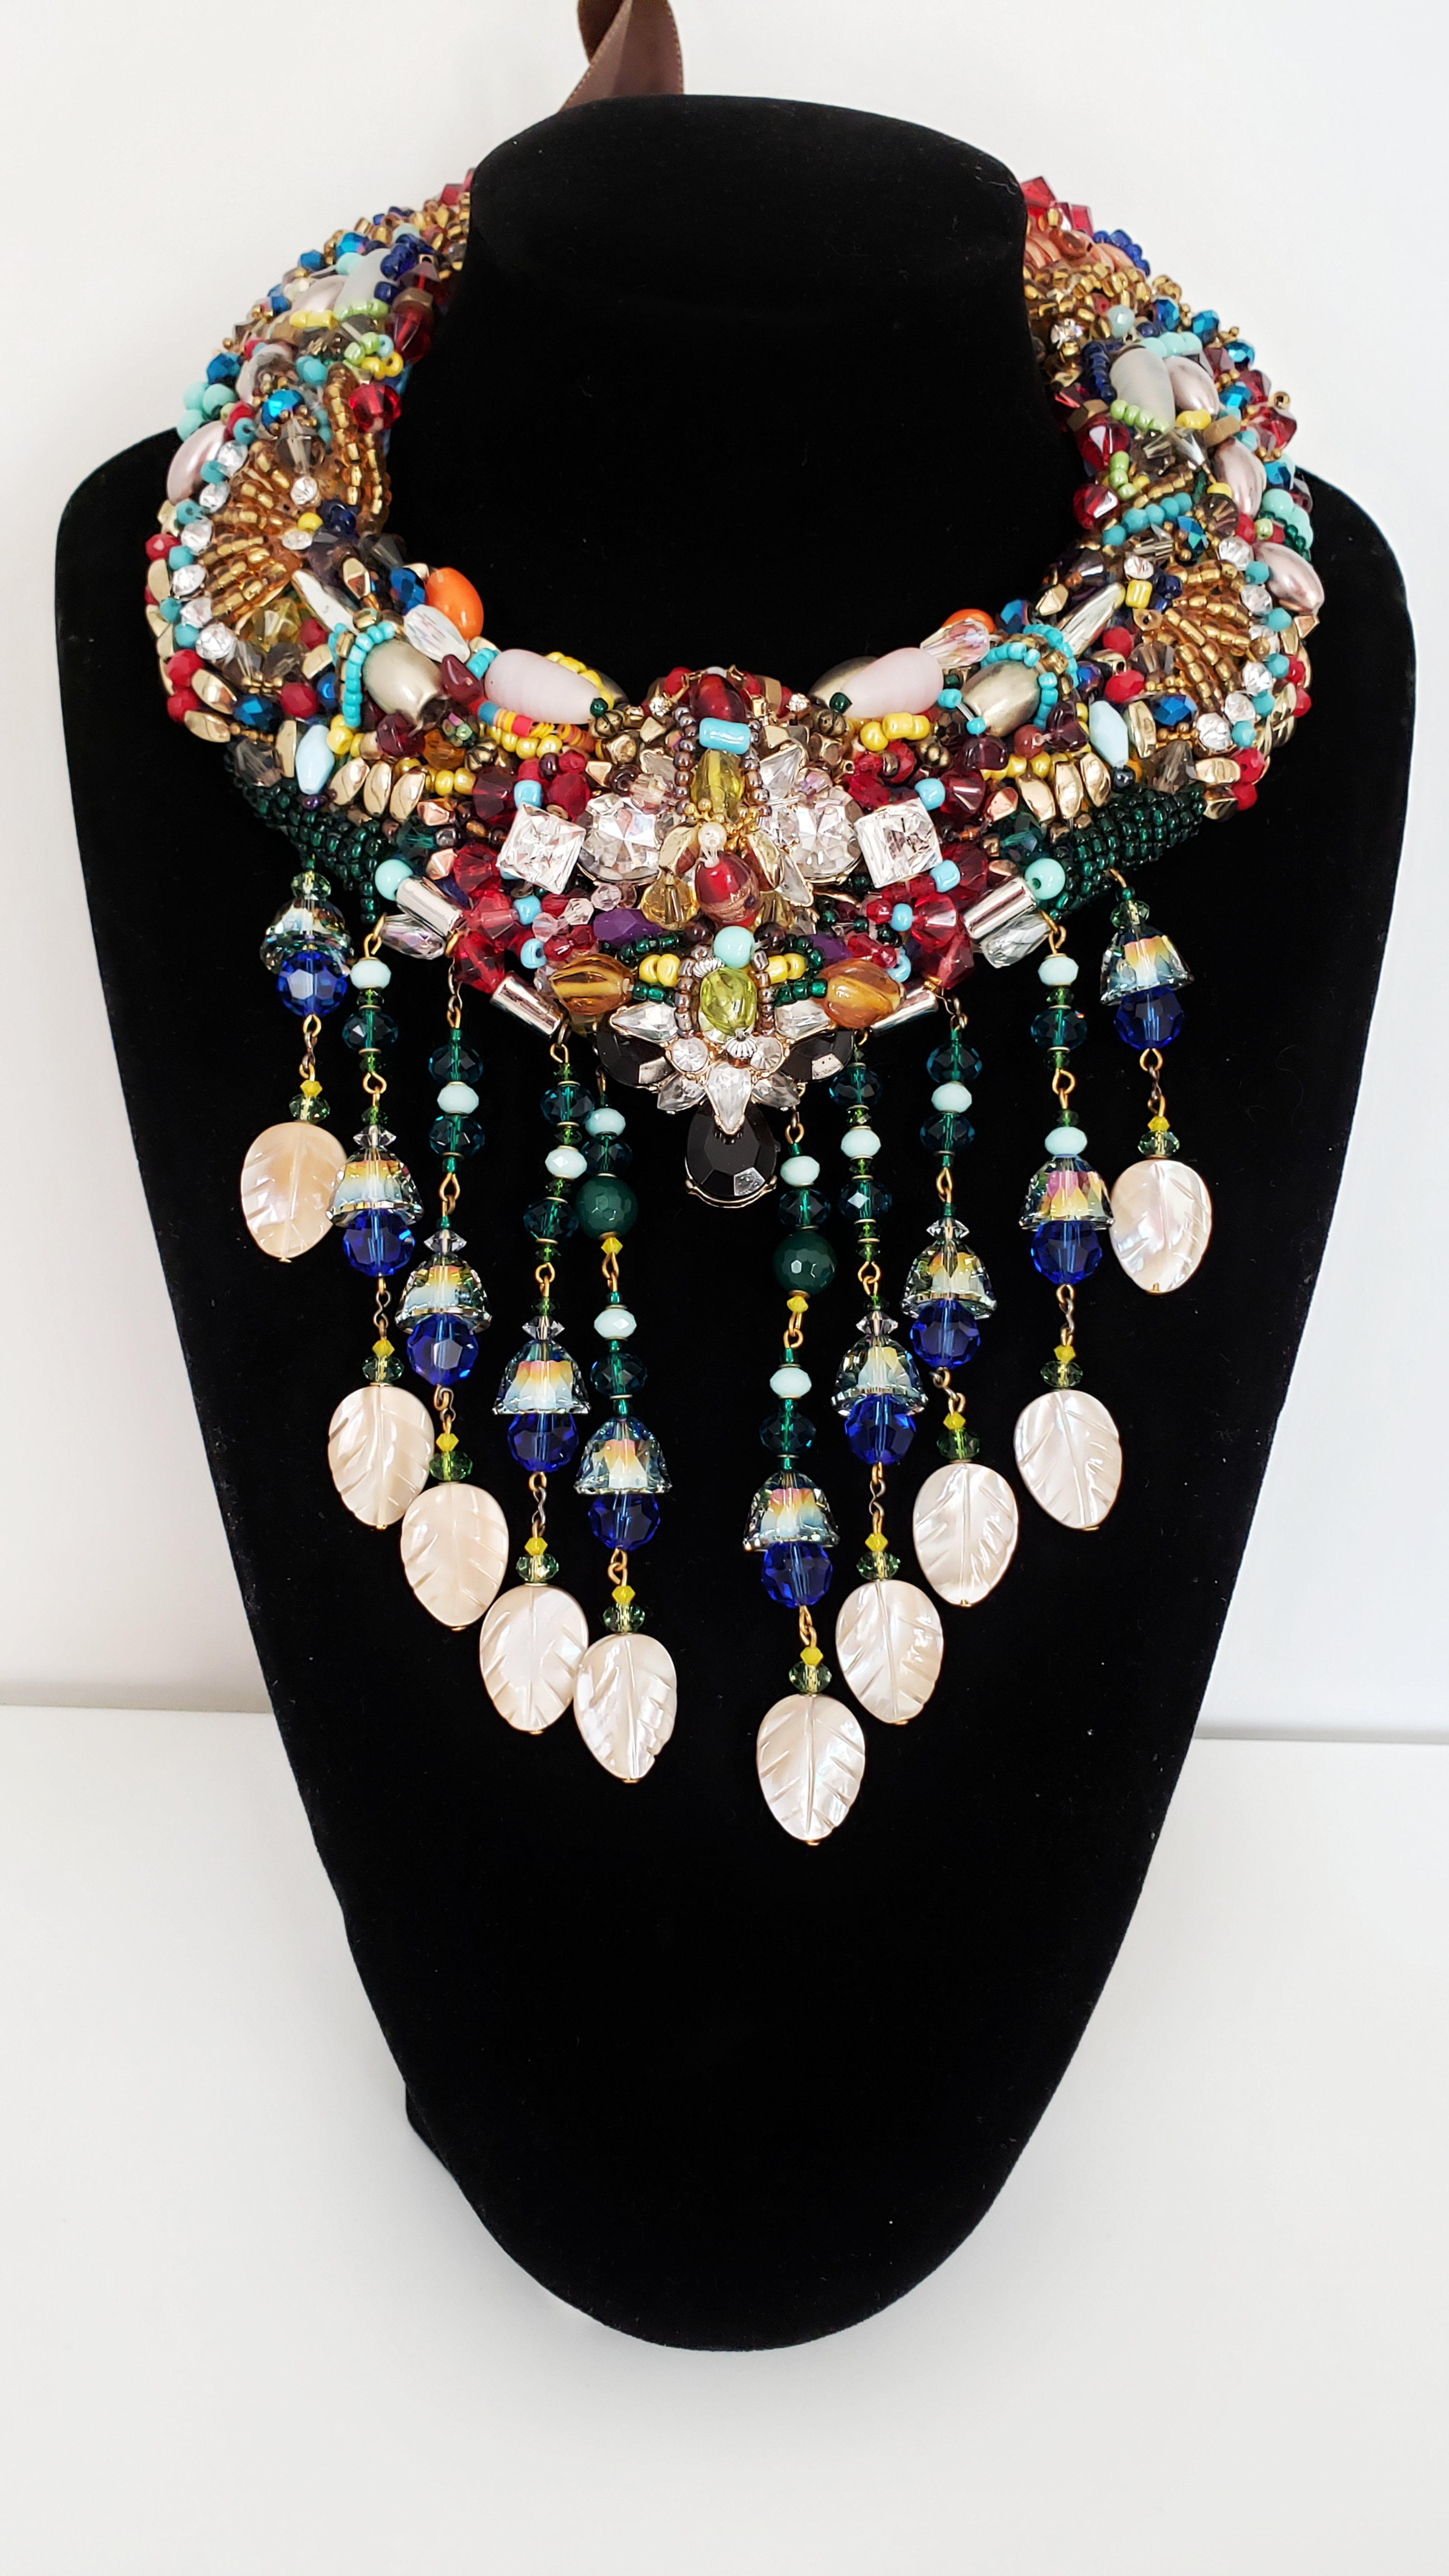 Diese elegante, mit mehreren Swarovski-Perlen verzierte Quasten-Halskette besticht durch ihre Lebendigkeit, Farbkombinationen und Details.

Diese Halskette besticht durch eine Kombination aus verschiedenen Glasperlen, Acrylanhängern, unterschiedlich